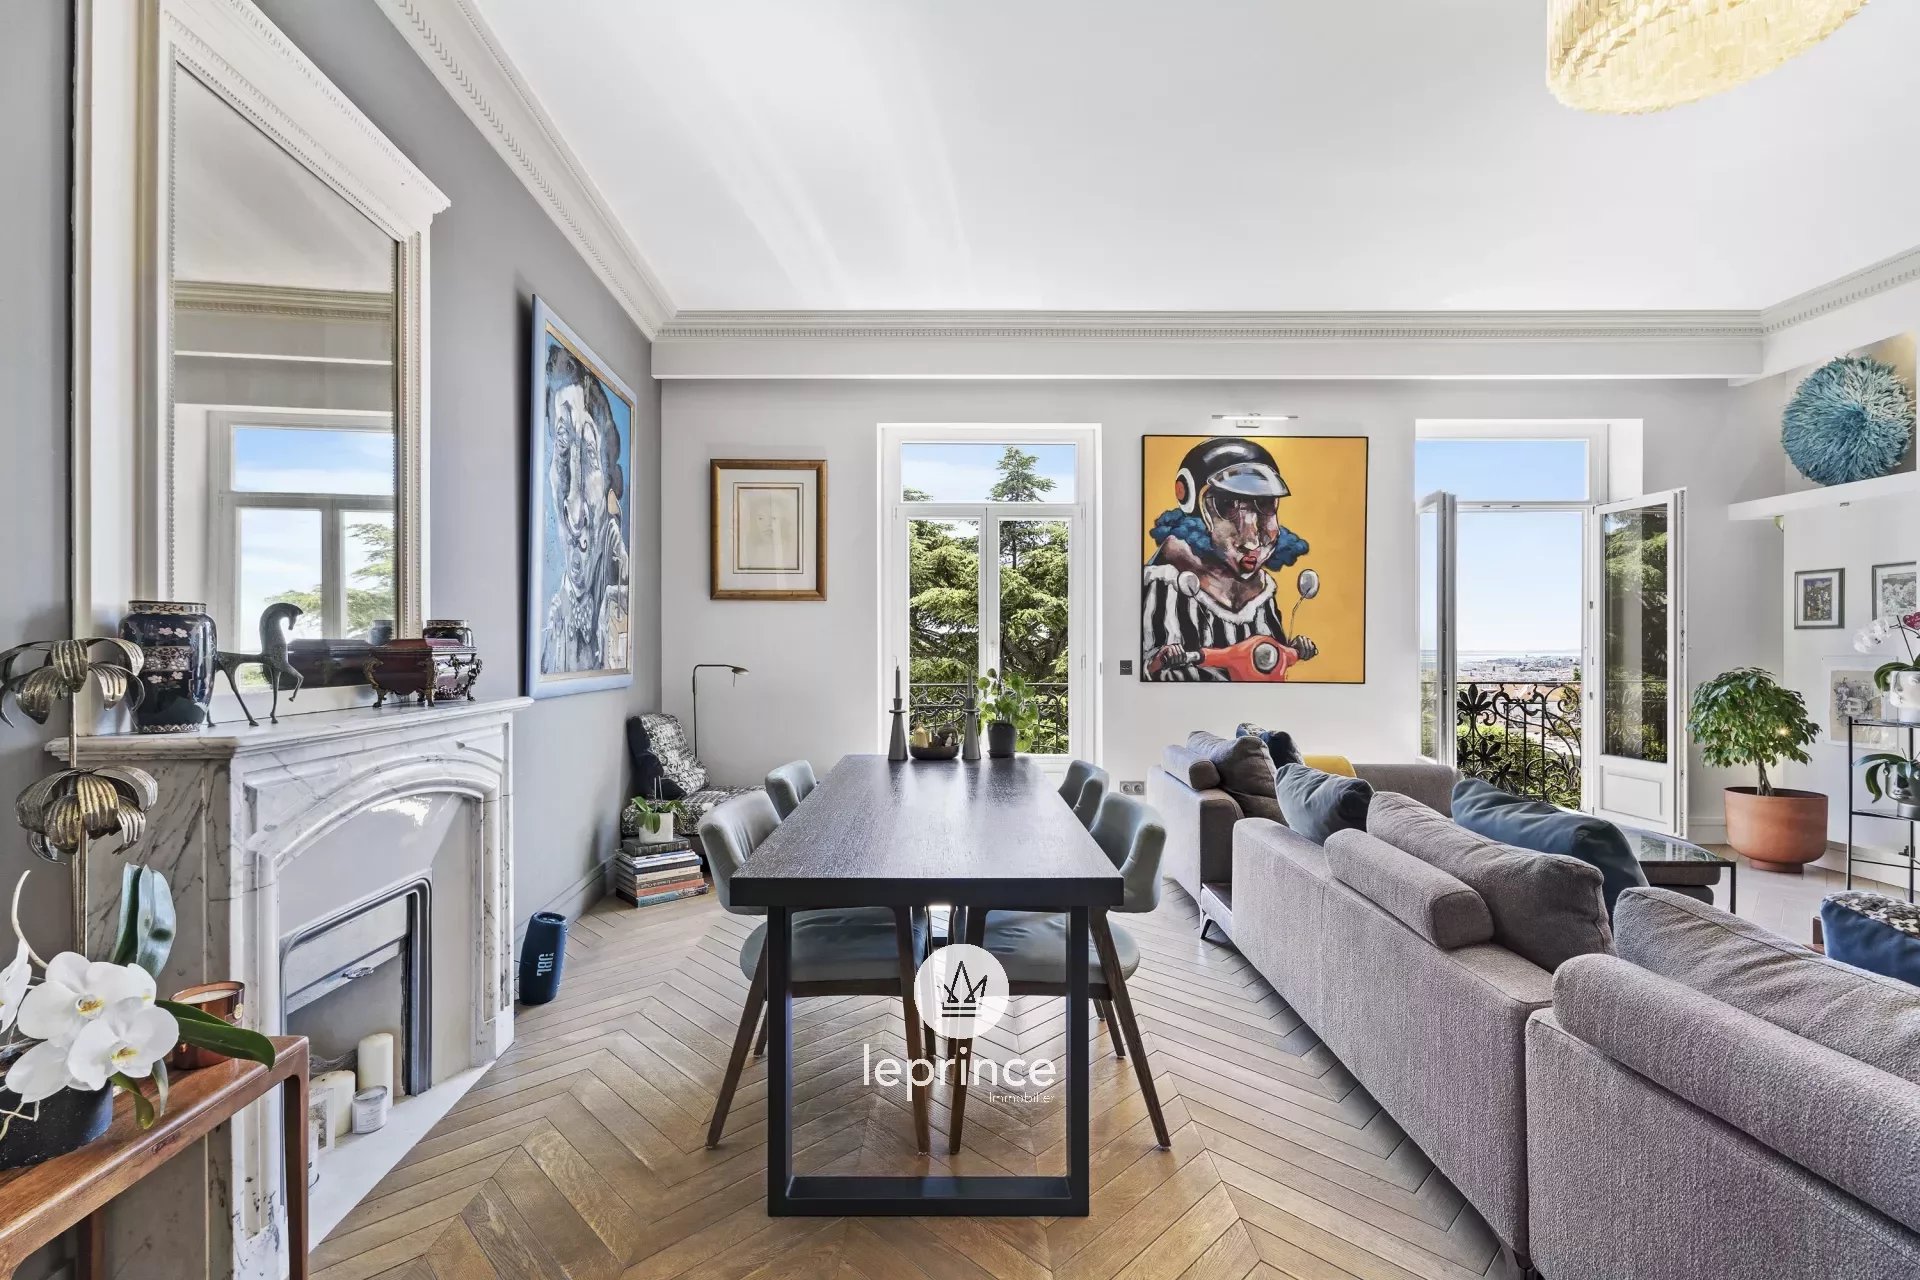 Vente Appartement 130m² 4 Pièces à Nice (06000) - Leprince Immobilier